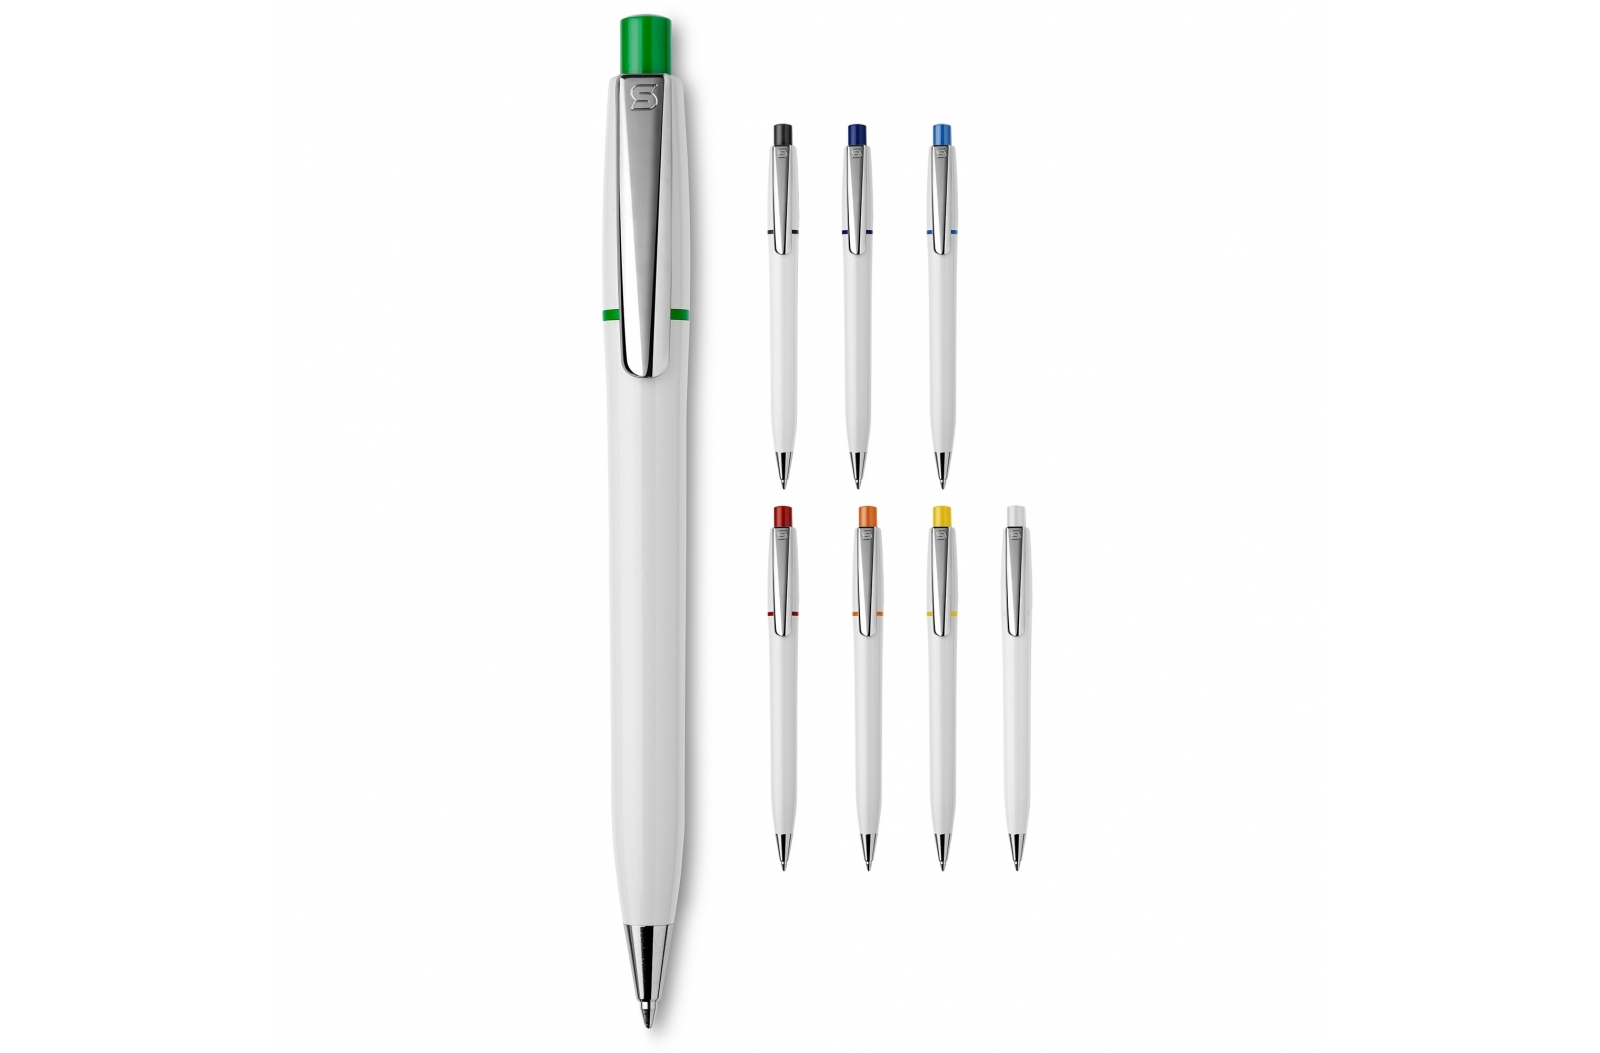 Elegant Chrome Ballpoint Pen - Ledston Luck - Plymouth